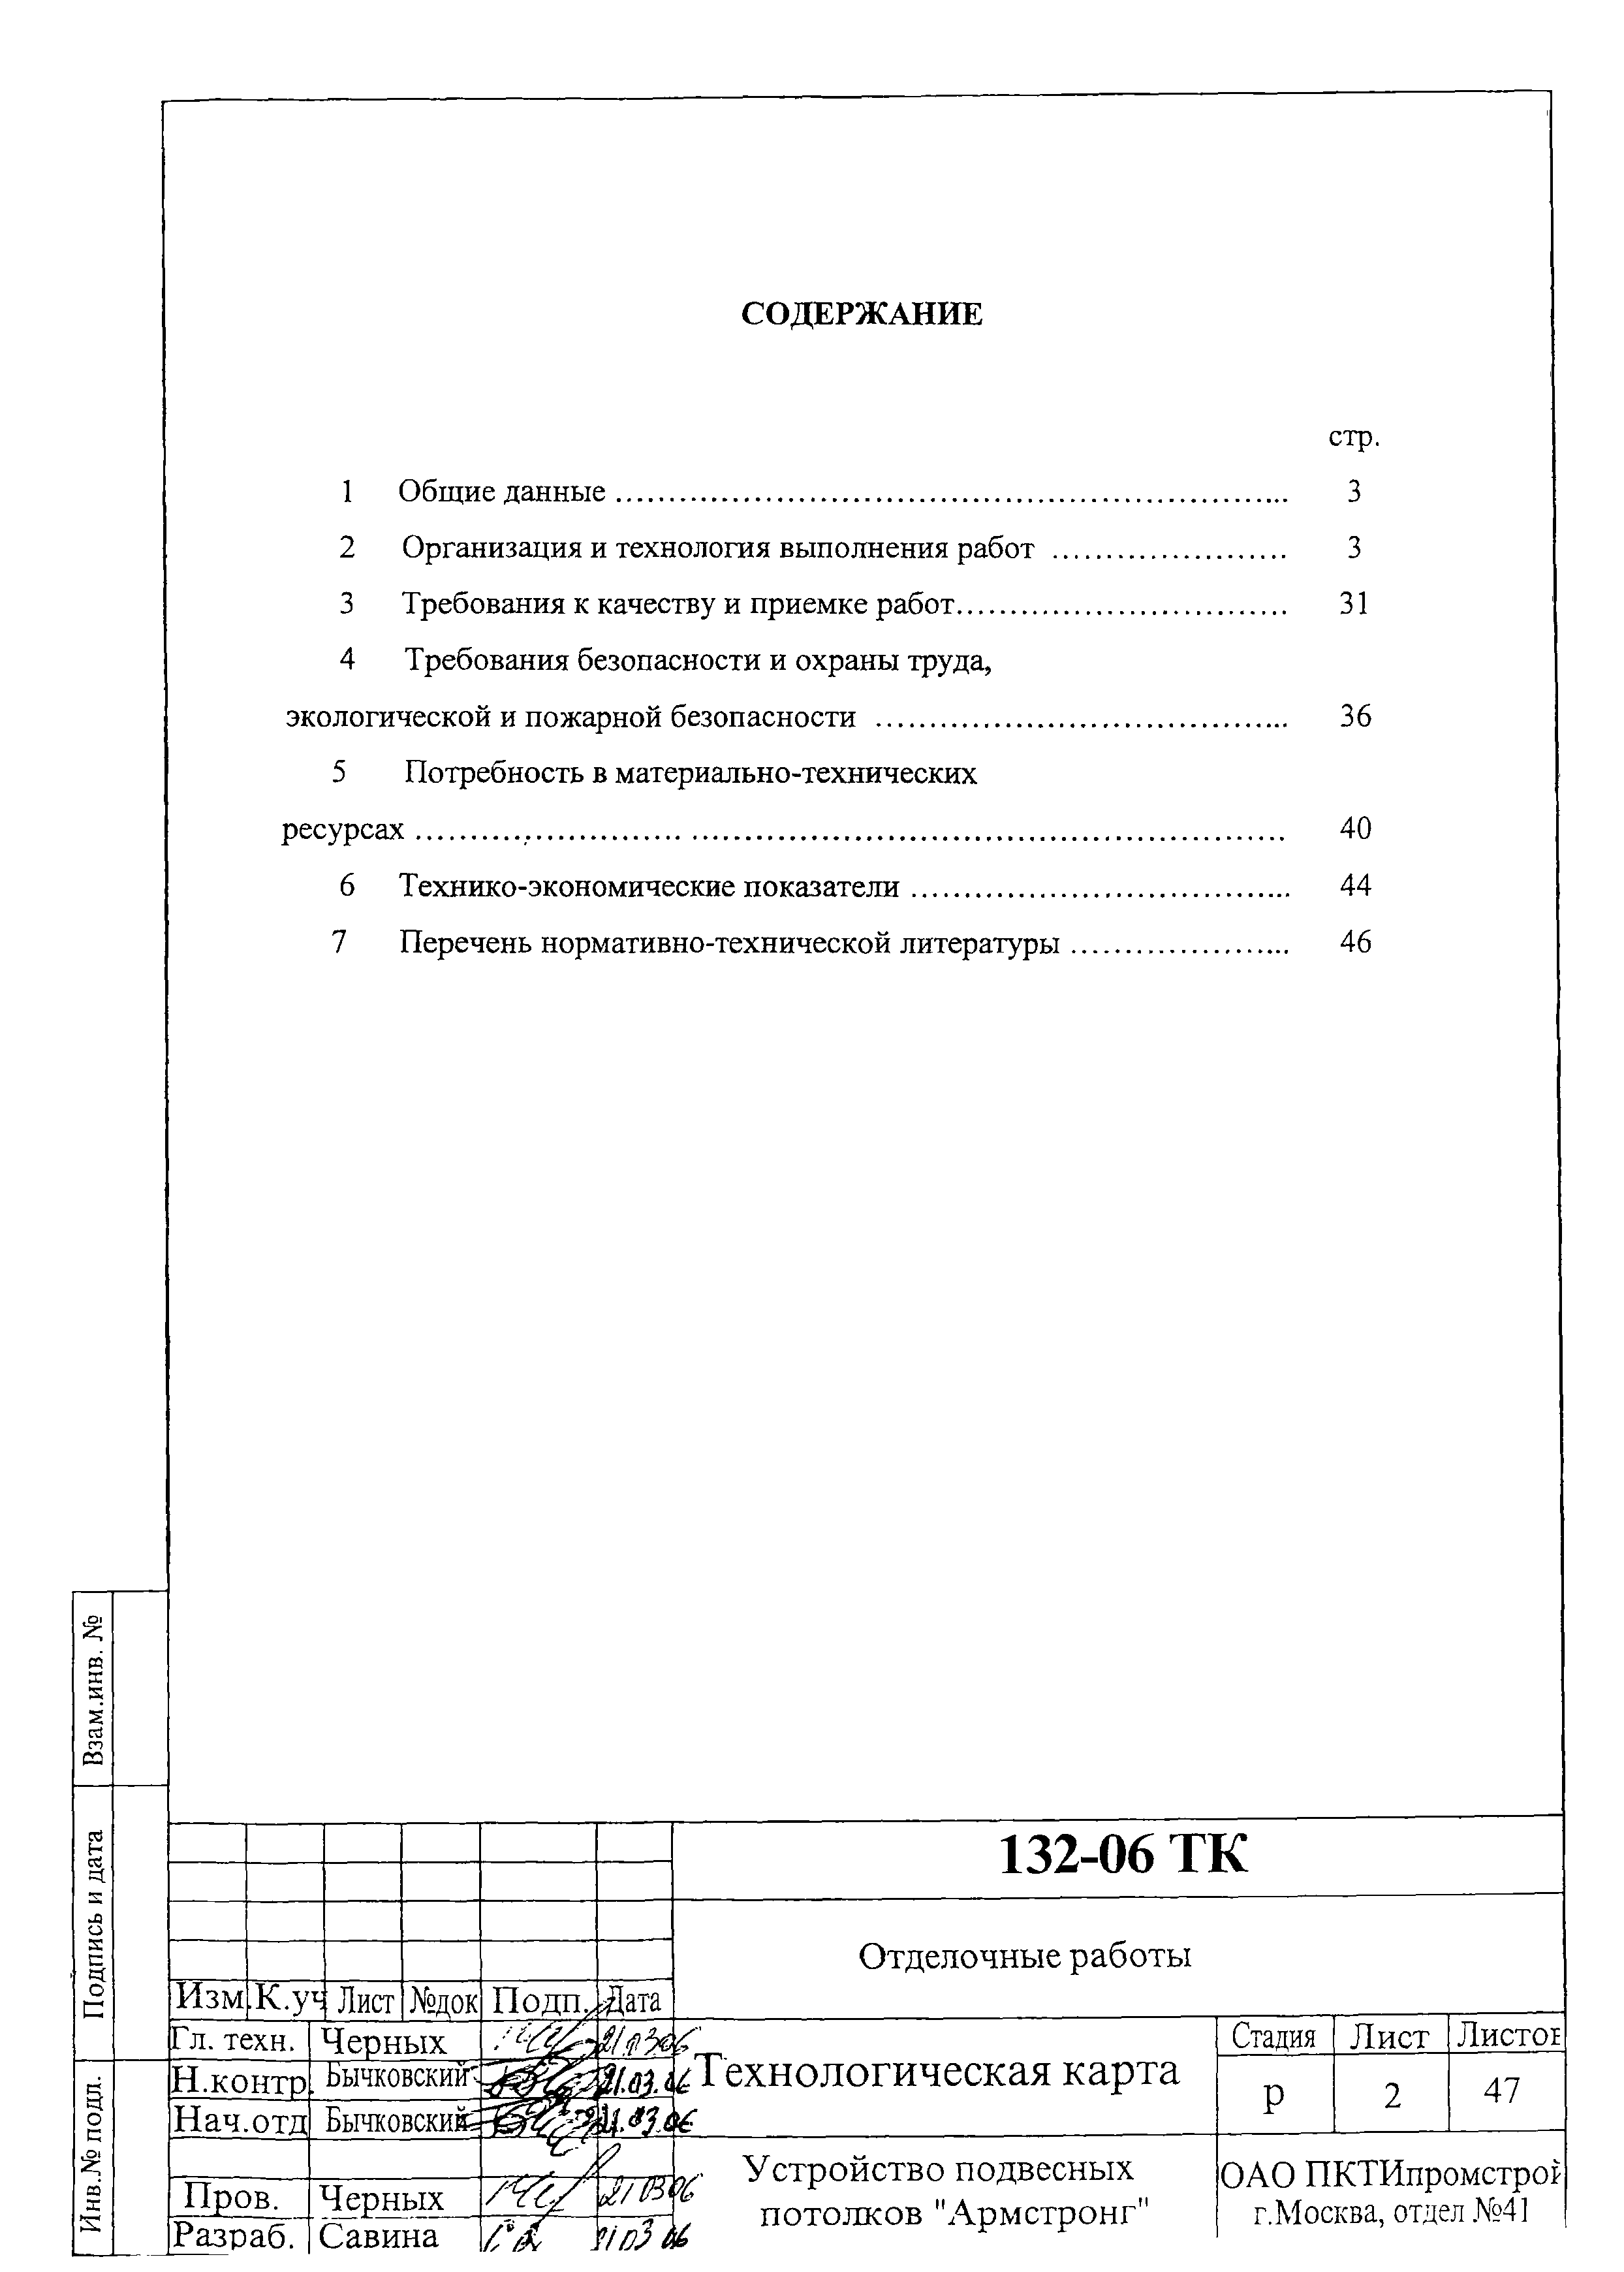 Типовая технологическая карта ттк устройство подвесного потолка типа армстронг